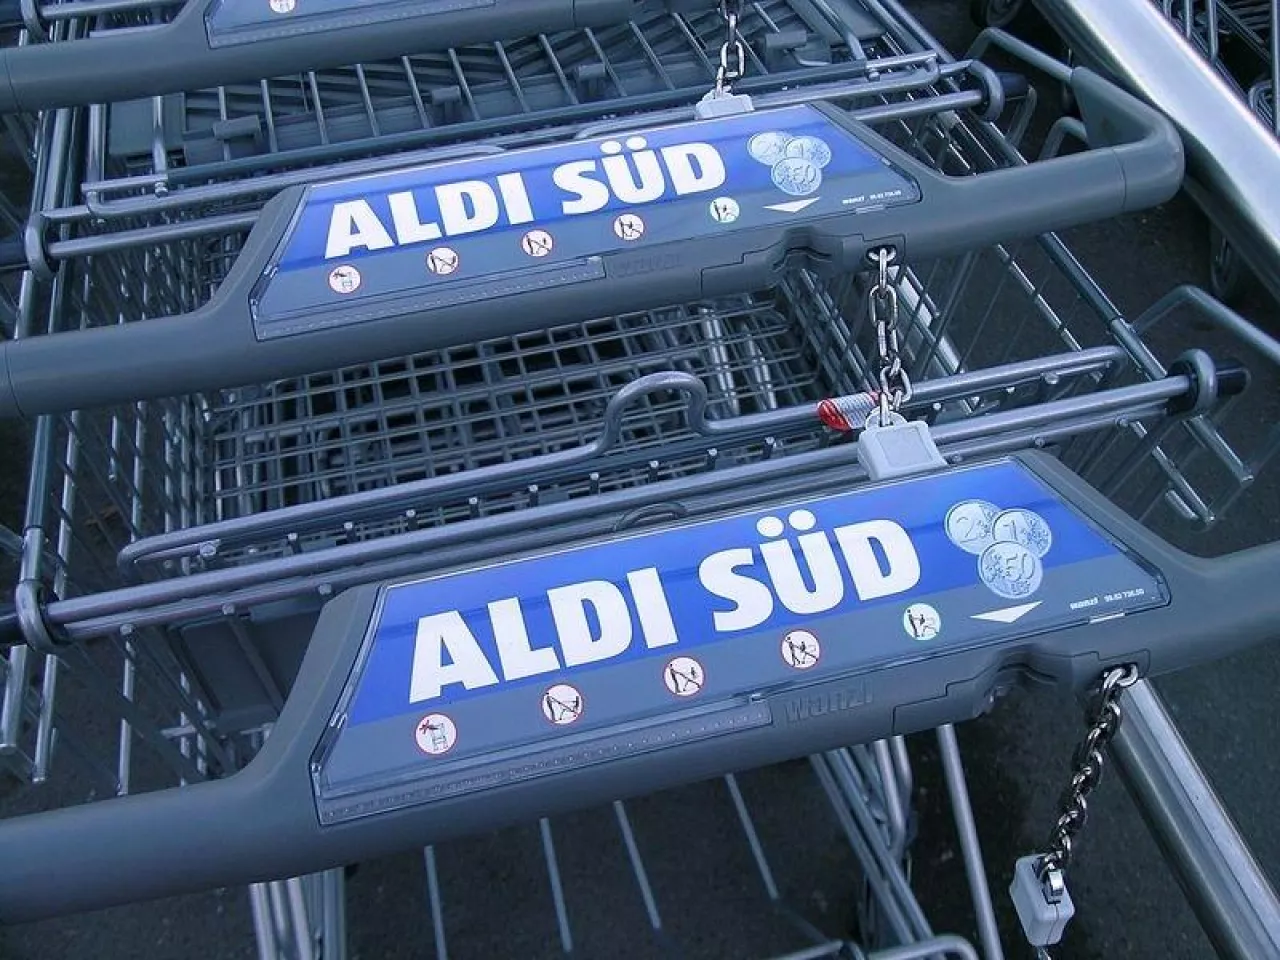 Wózki przed sklepem Aldi Sud w Niemczech (fot. Licencja Creative Commons / Salino01)